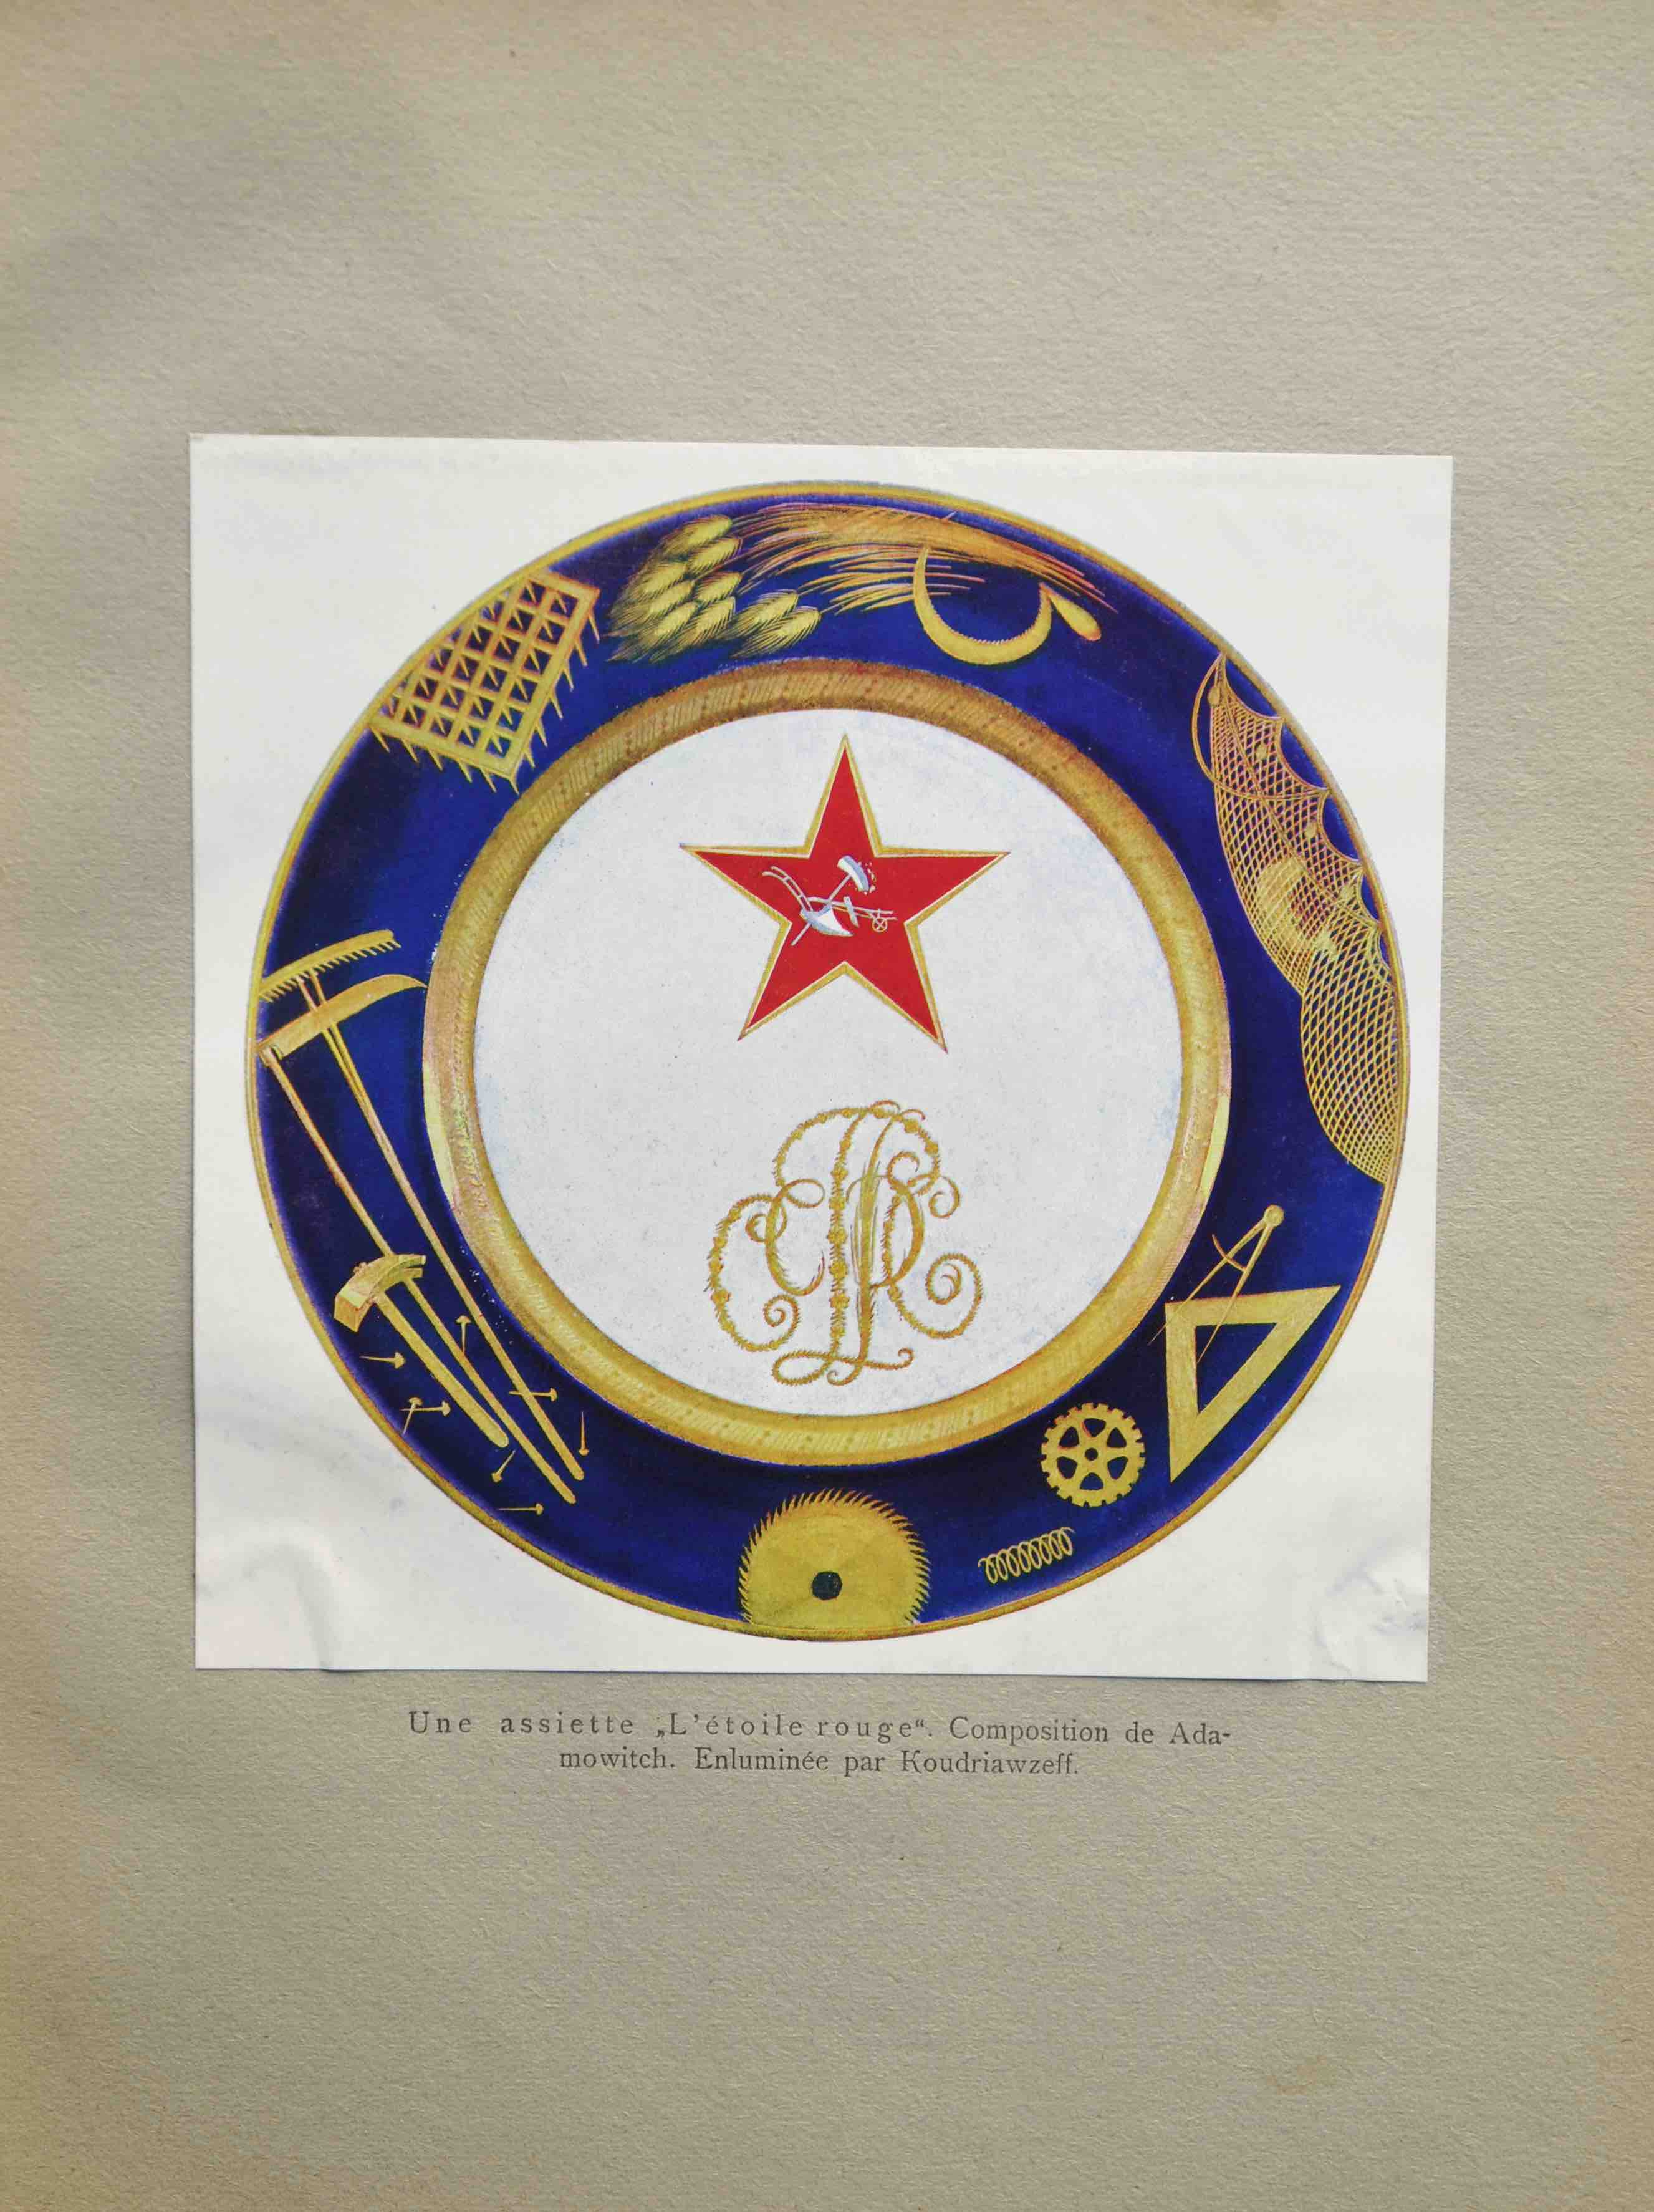 GOLLERBACH, ERIKH F.: -  La porcelaine de la manufacture d'tat. Moscou 1922.